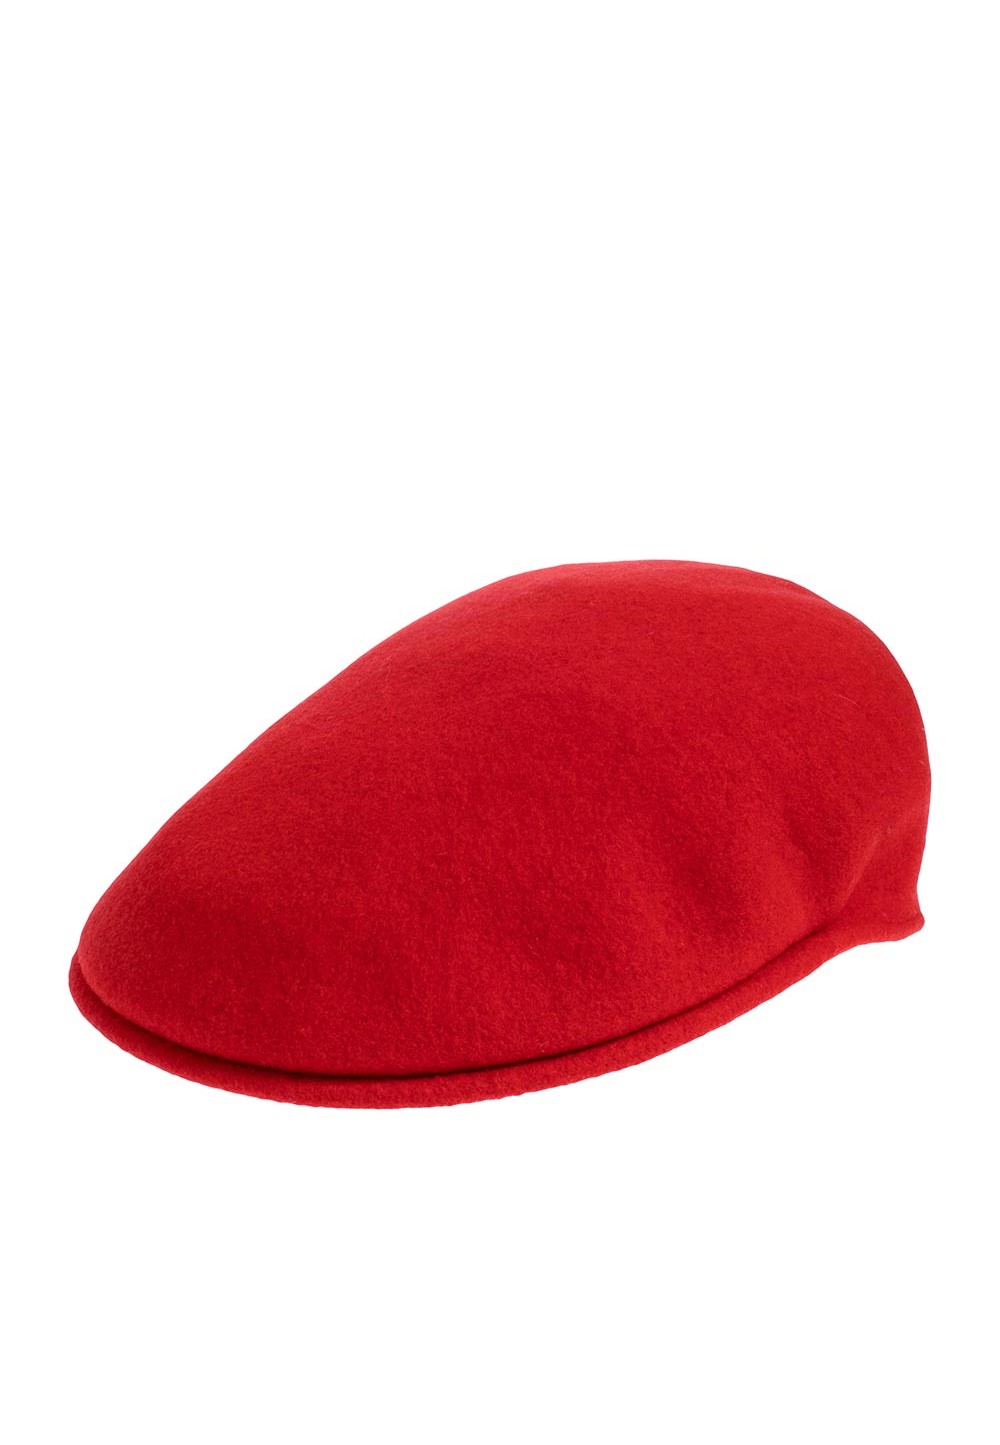 Стильная красная кепка Kangol Wool 504